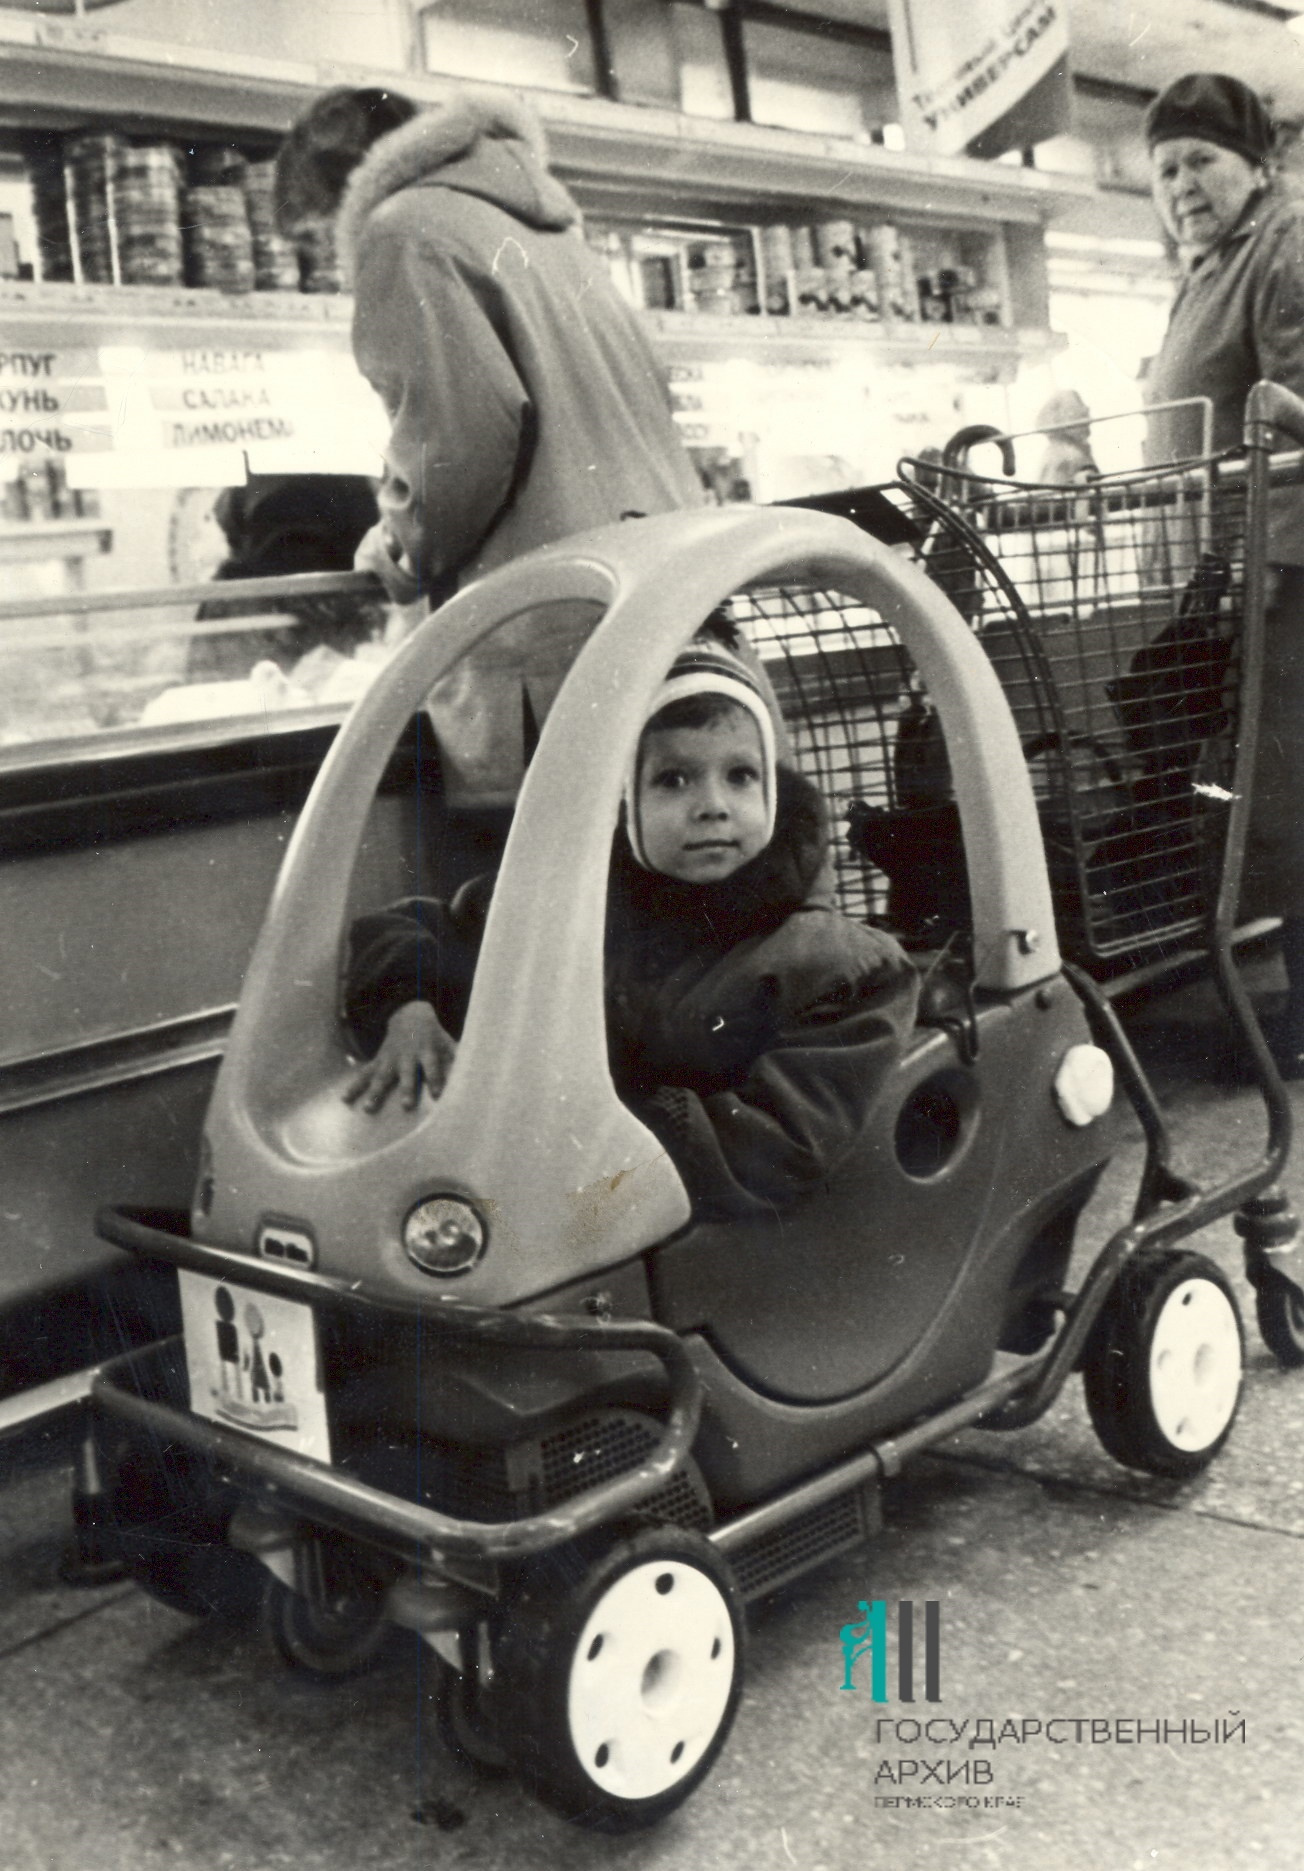 В 2000 году в «Универсаме» появились тележки в виде машинок — их очень любили дети